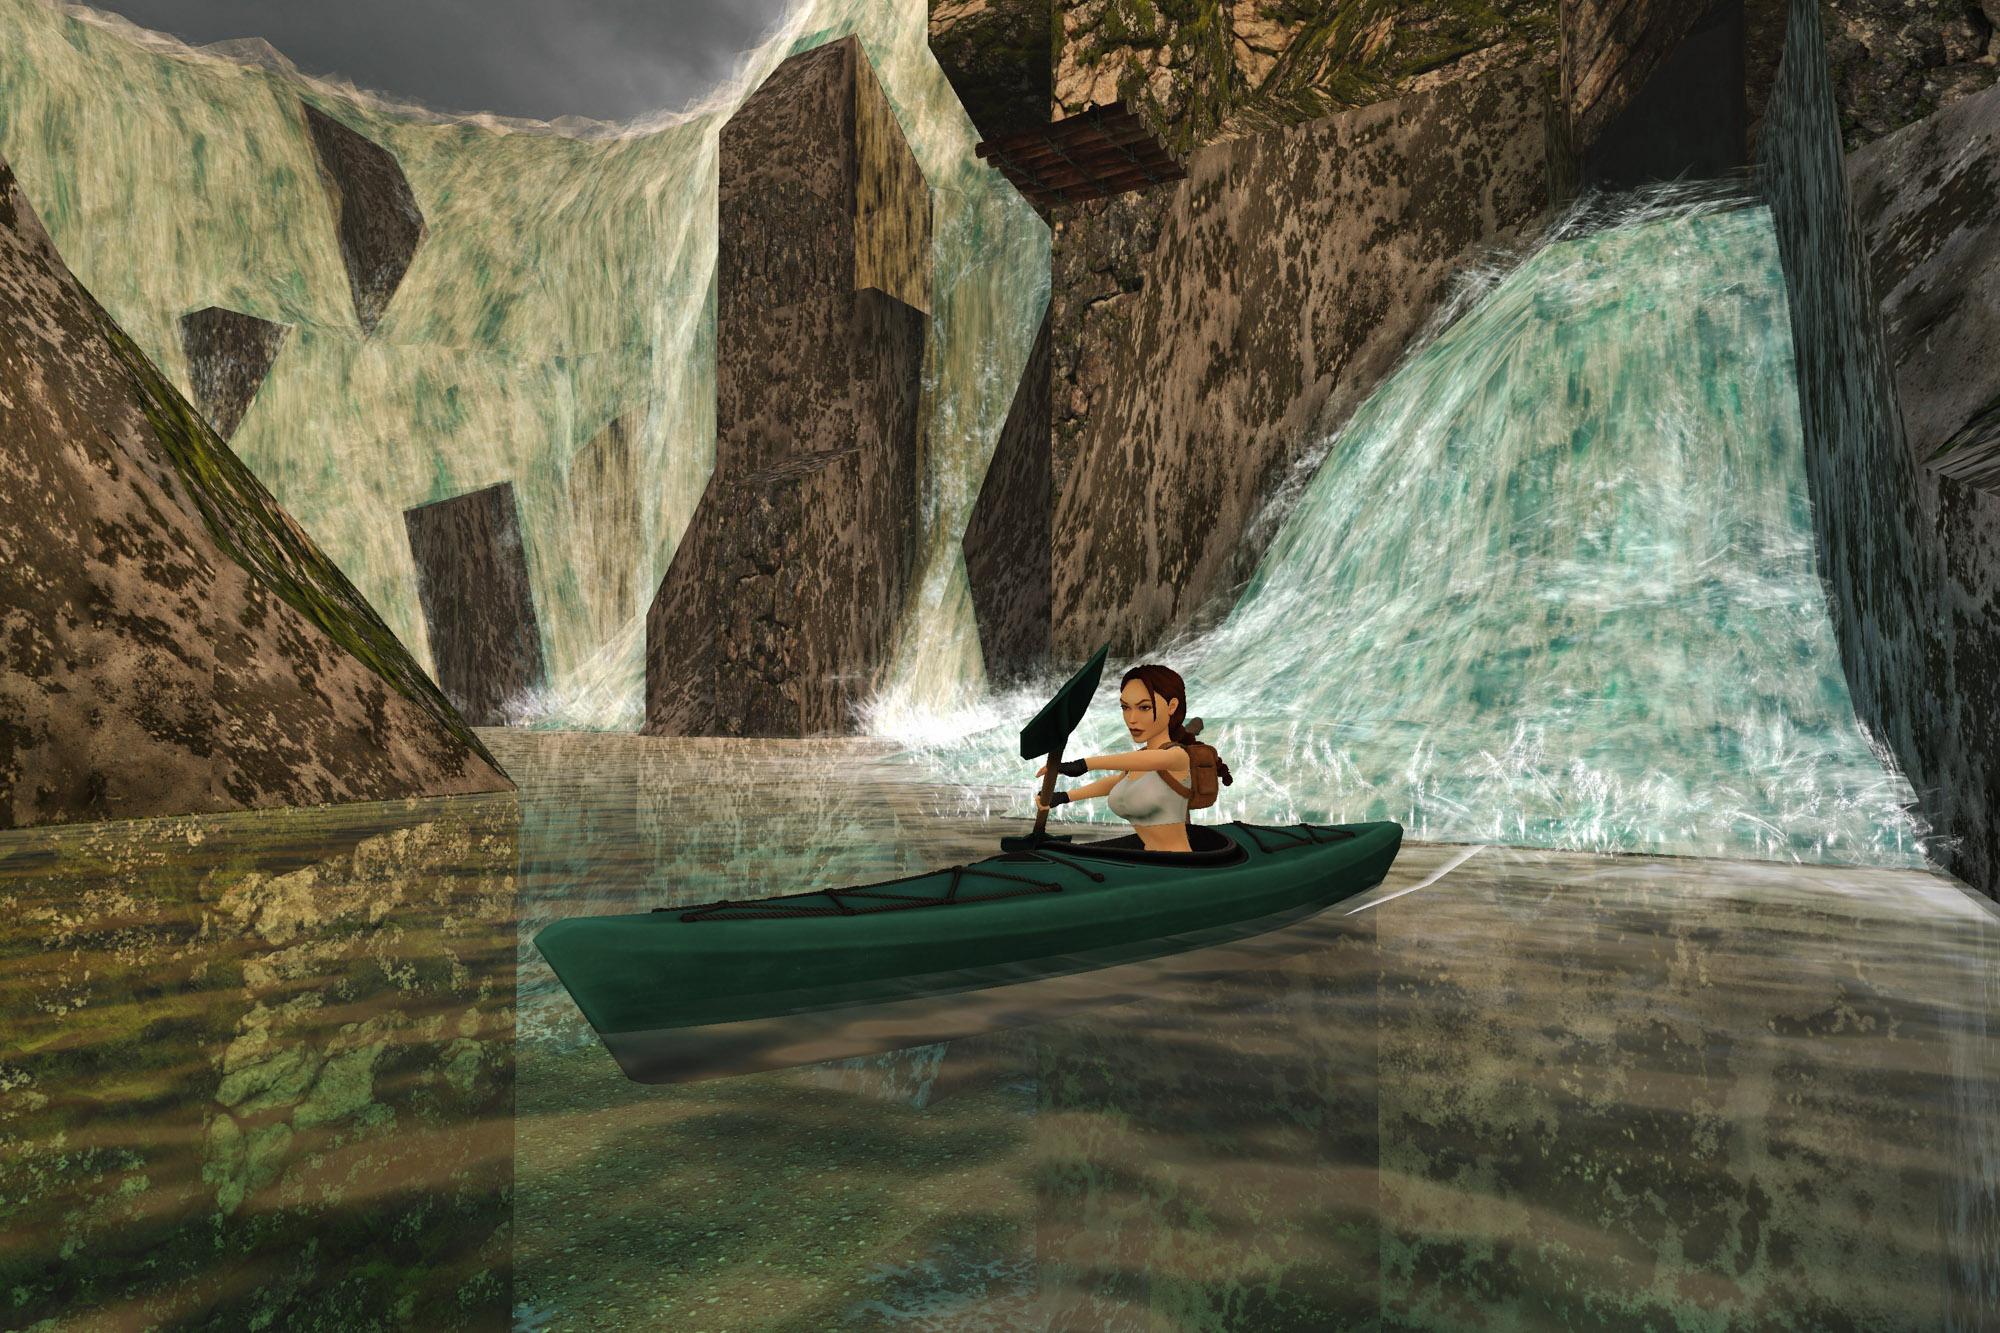 Lara paddling in a kayak through Madubu Gorge